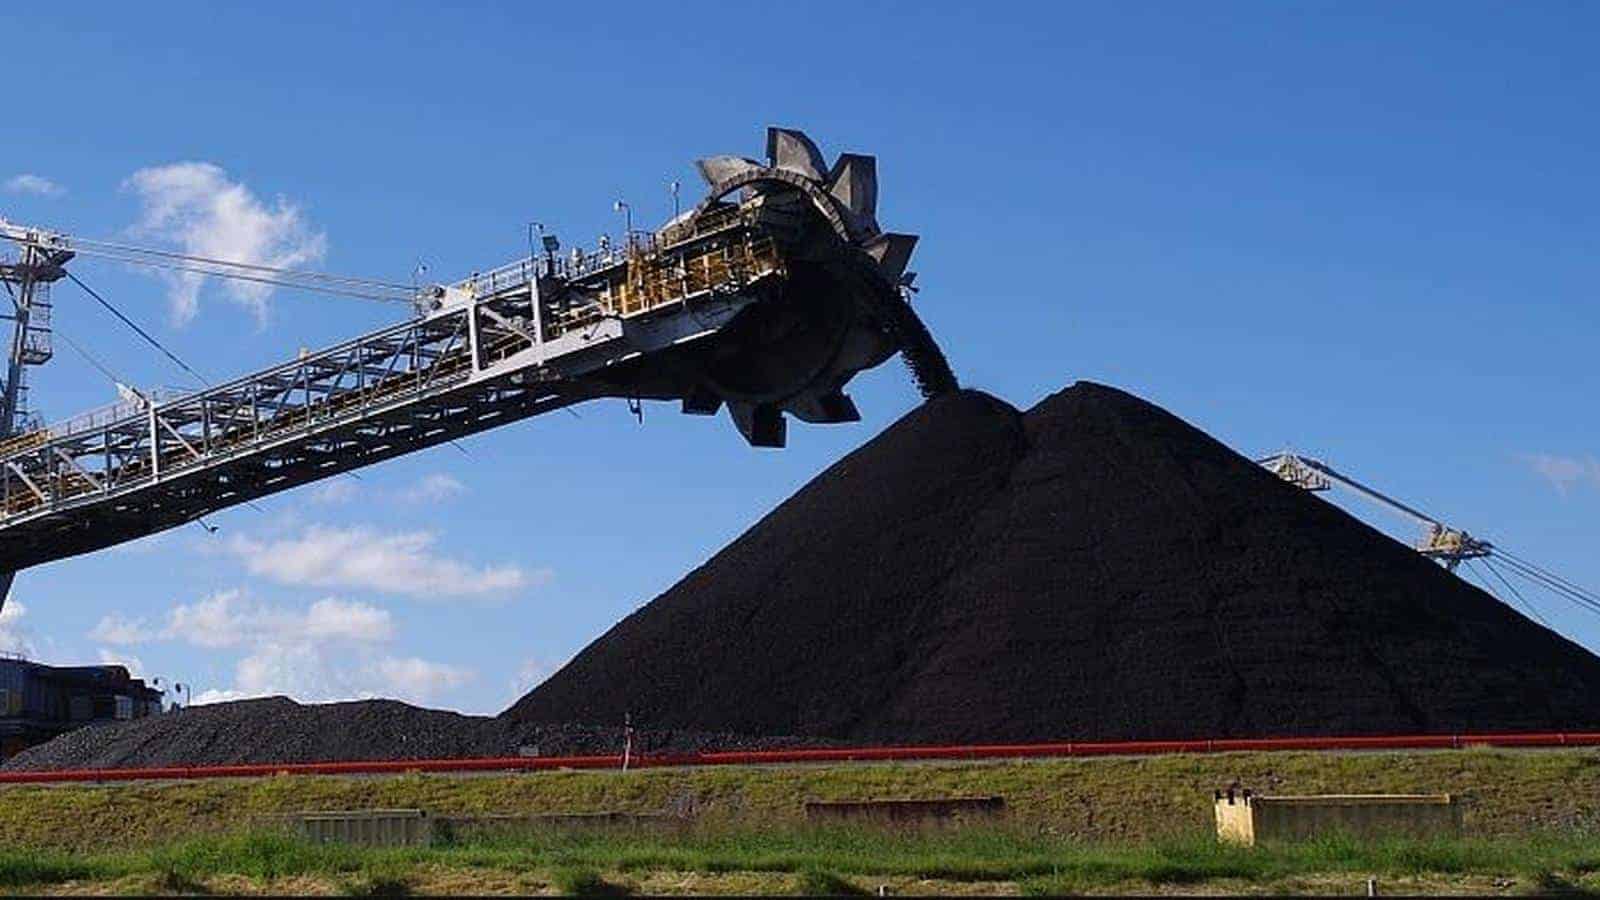 這是狗急跳牆麼？ 為了讓中國恢復進口煤炭，澳大利亞媒體無恥造謠